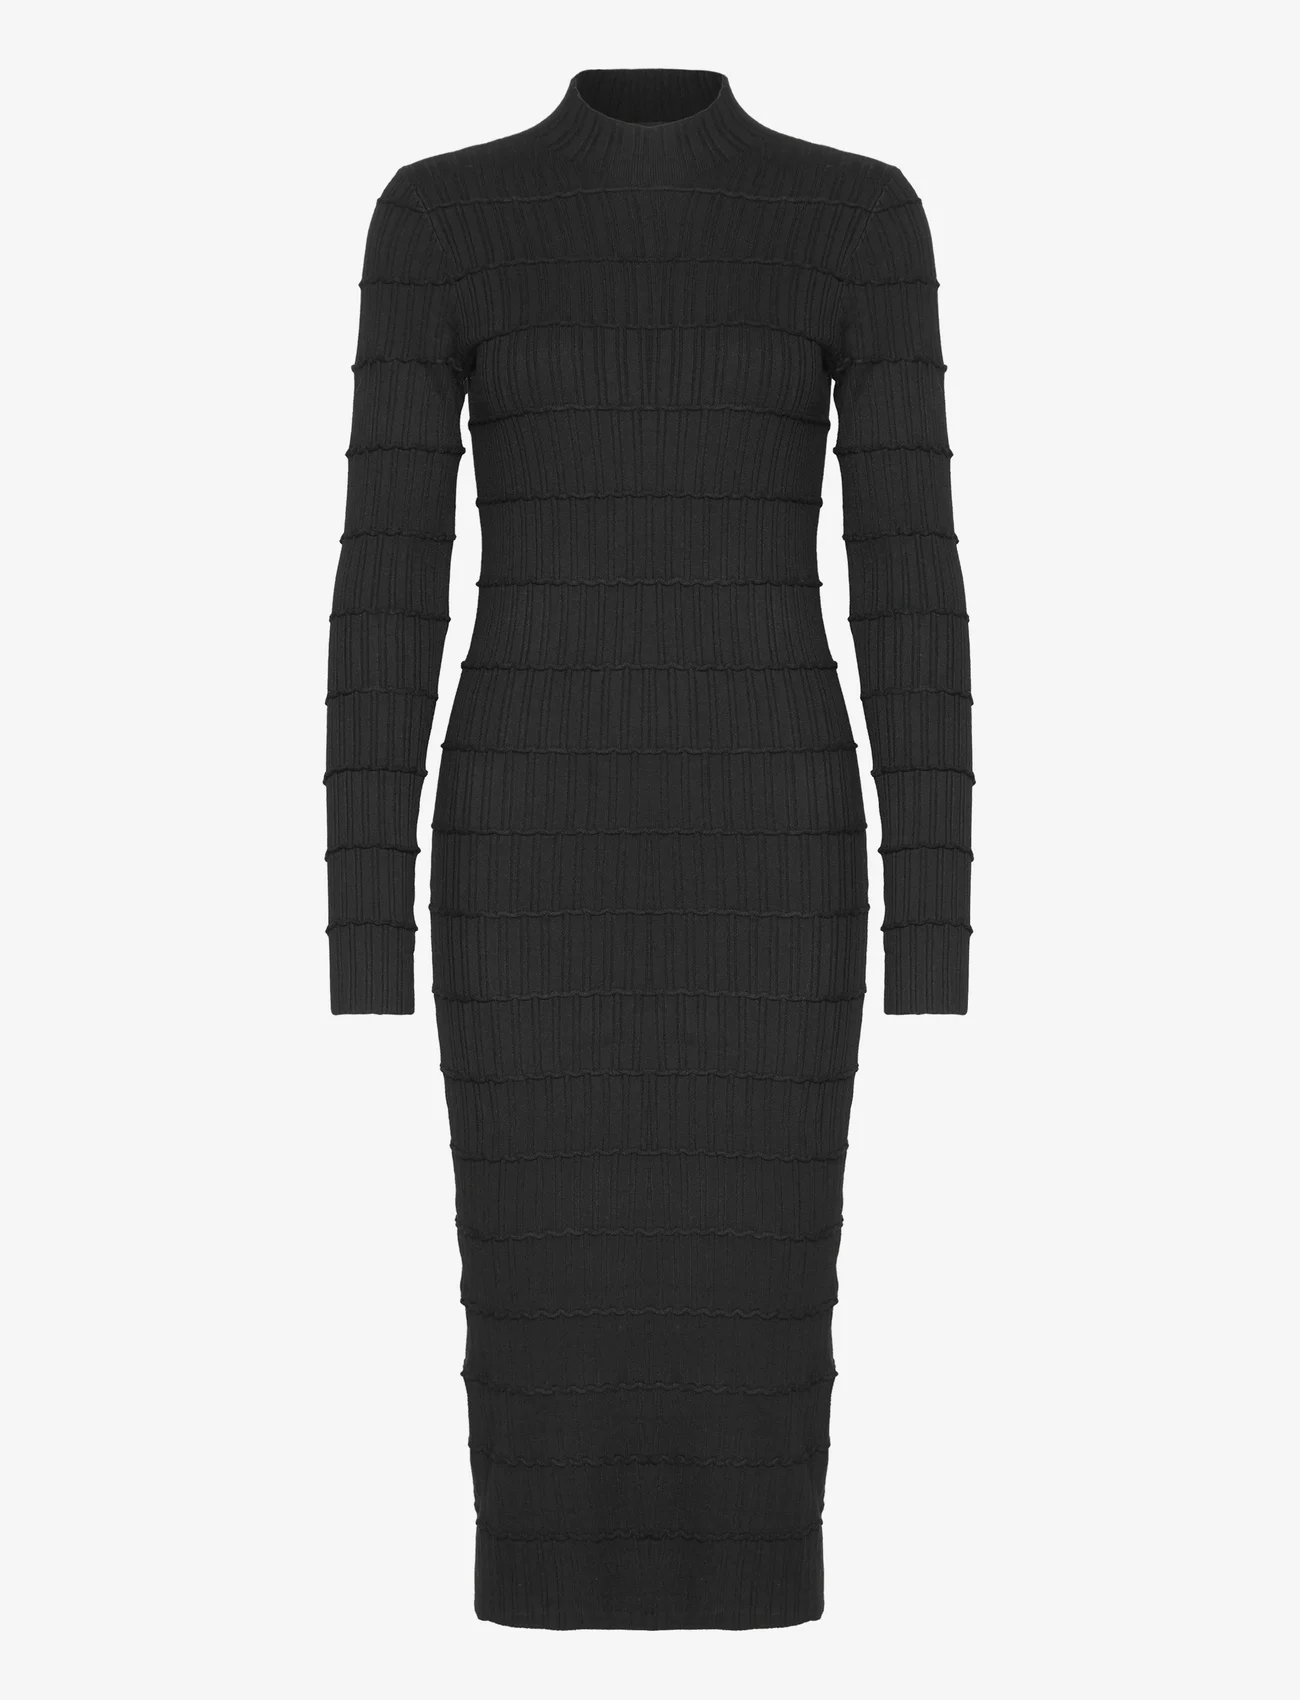 Vero Moda - VMLUCKY LS HIGHNECK CALF DRESS GA BOO - zemākās cenas - black - 0